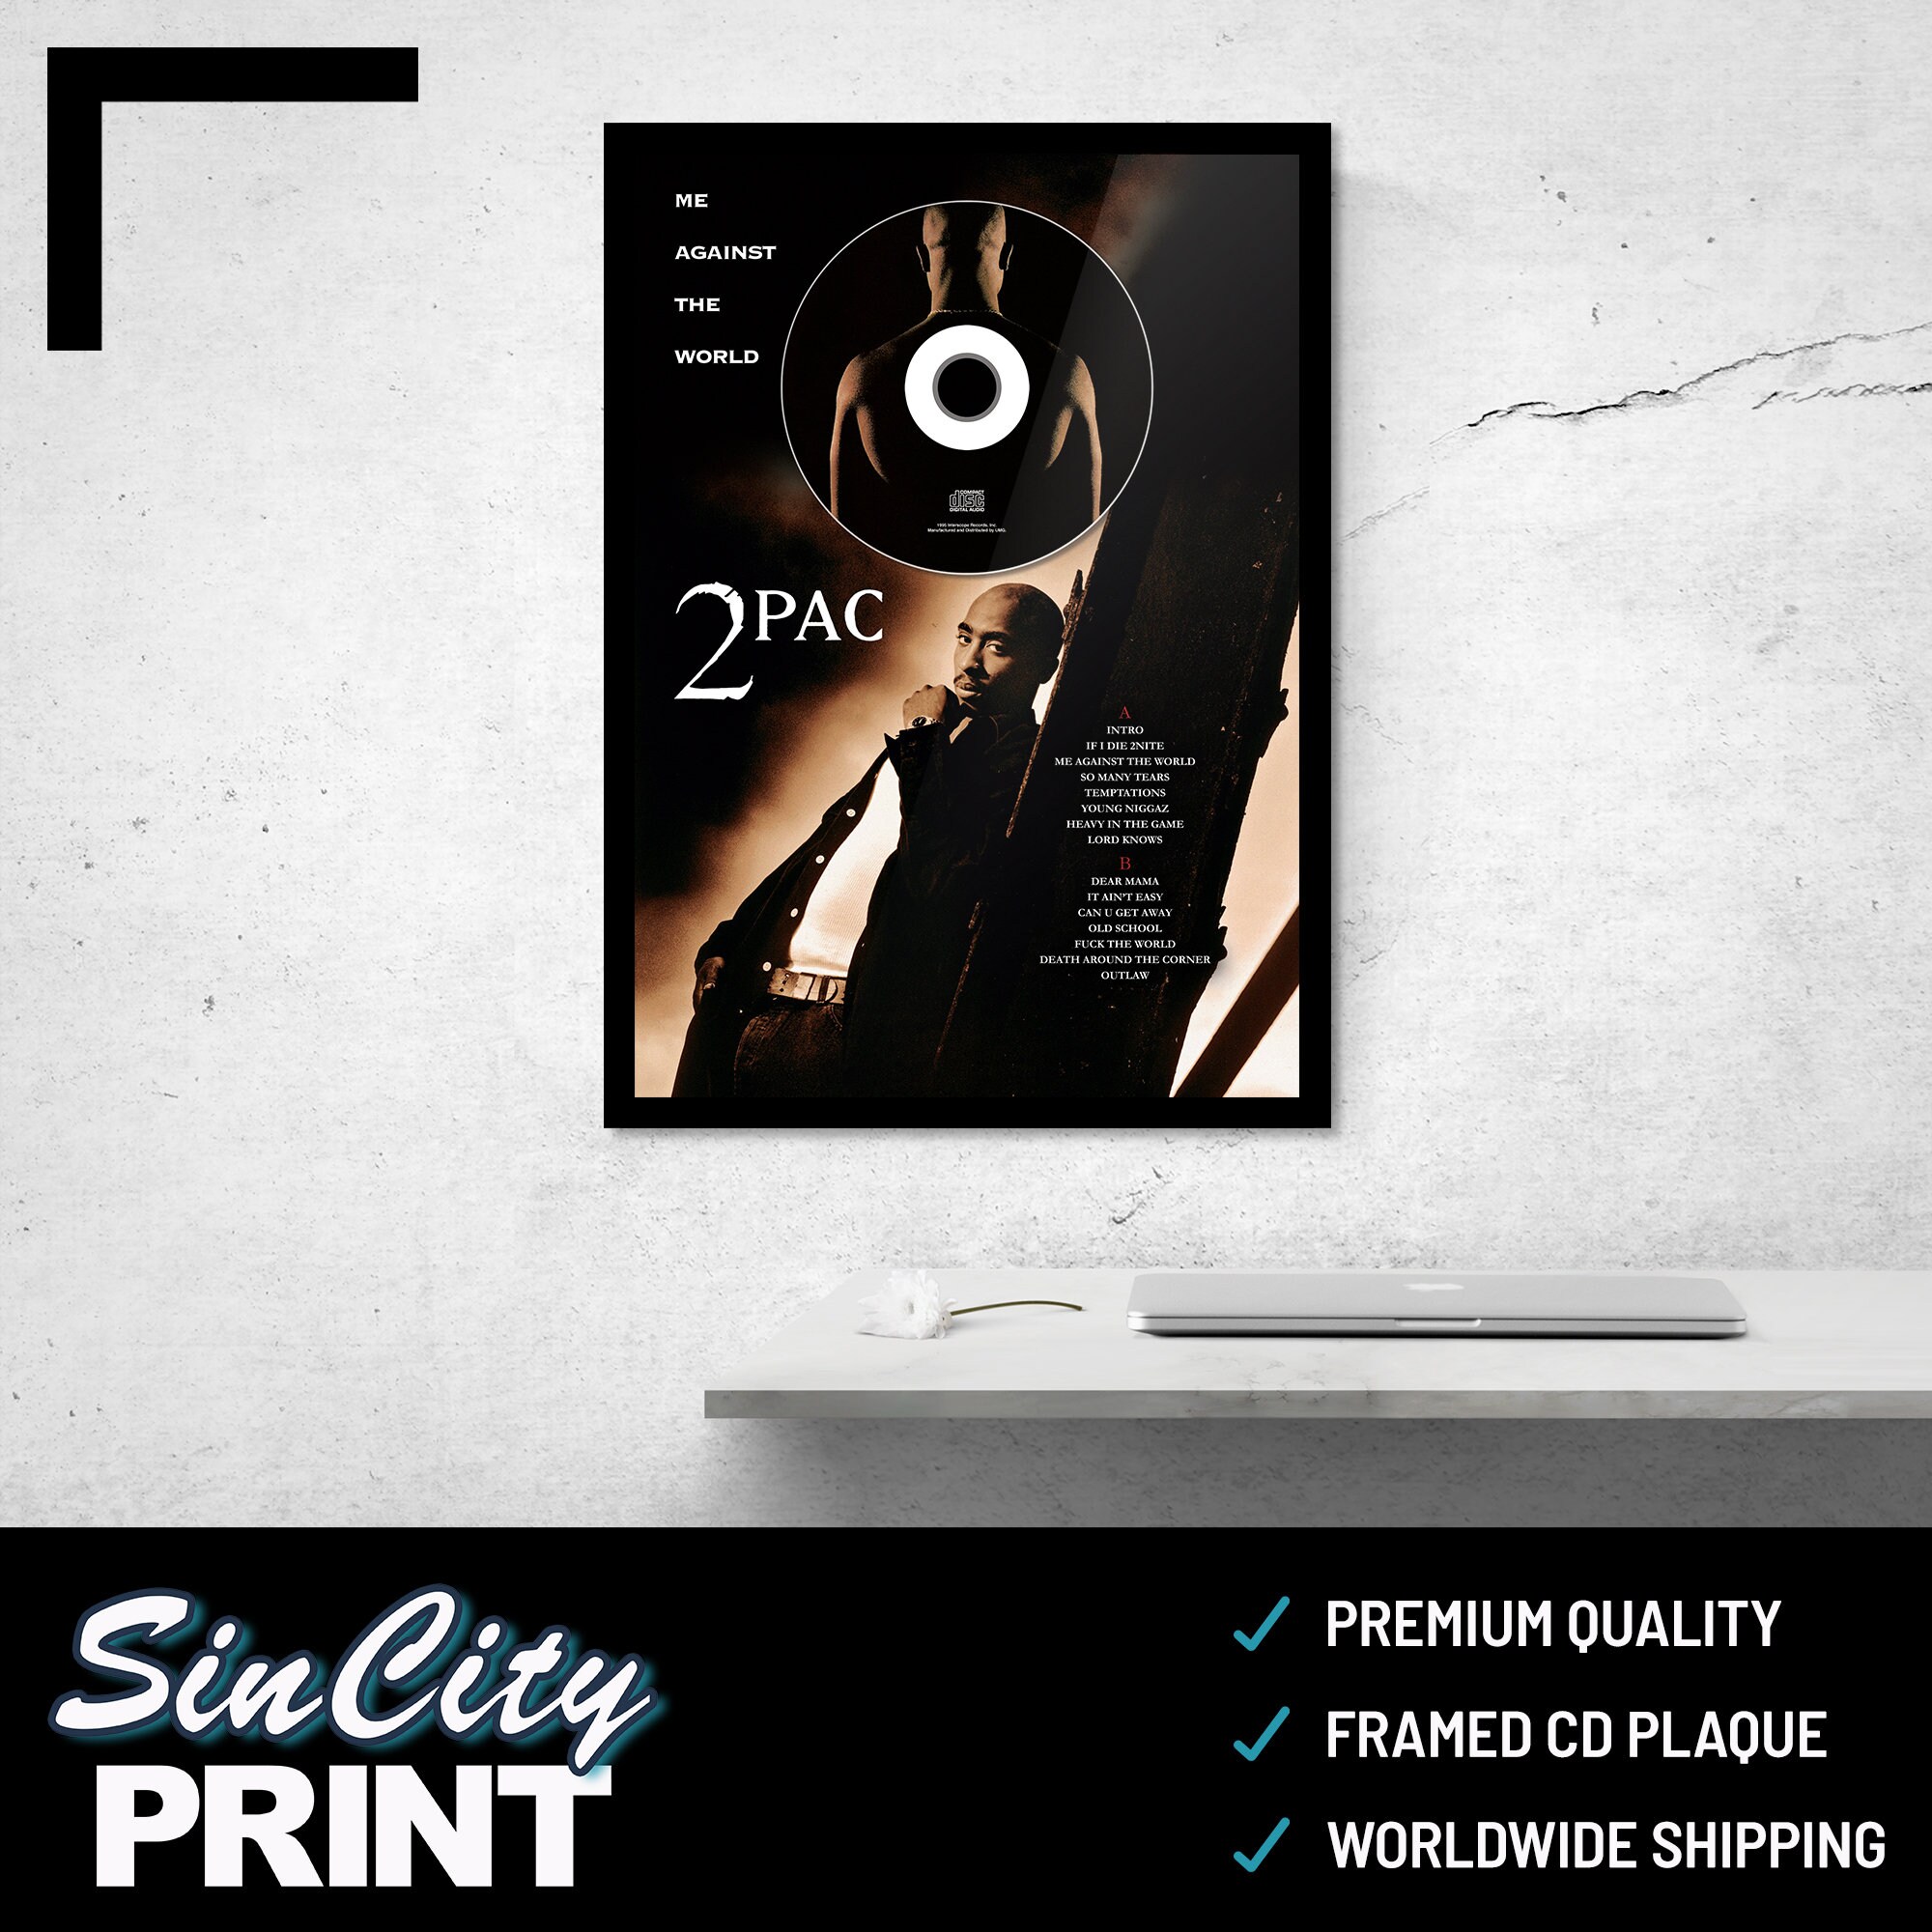 2Pac Tupac Shakur 'Me Against The World'  CD Album Plaque - Hip-Hop/Rap Music  Premium Matte Vertical Posters